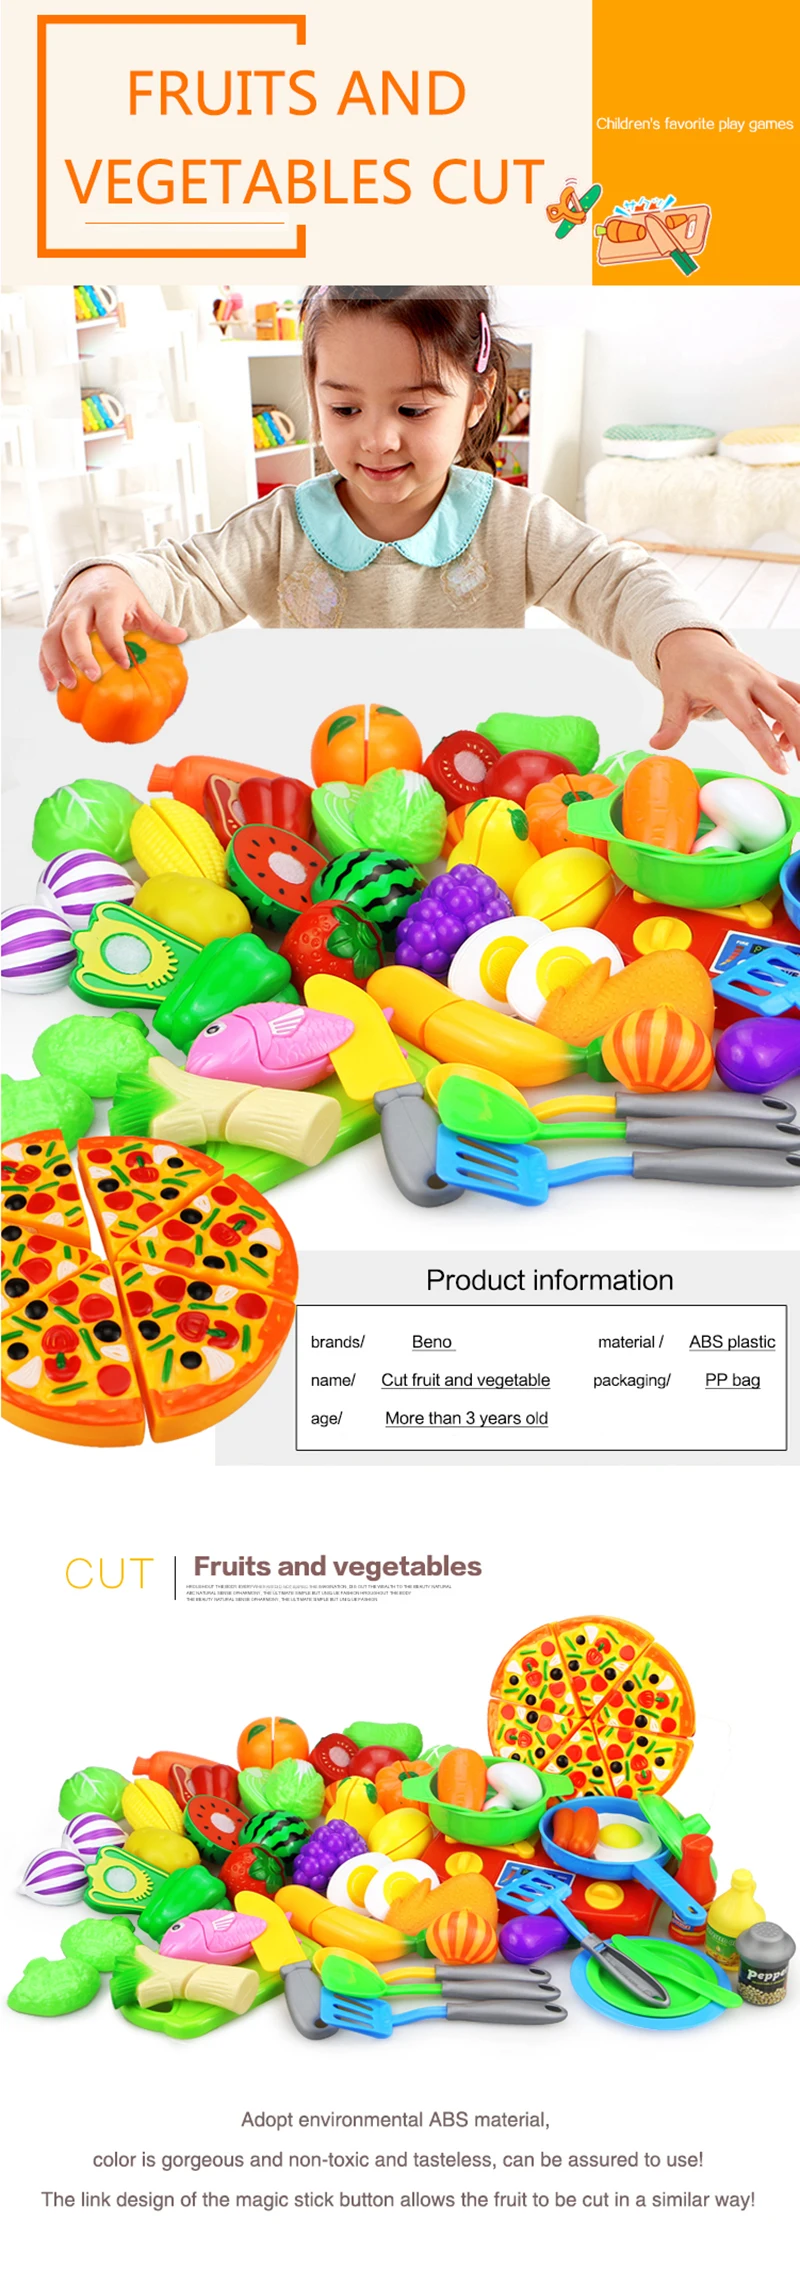 23 шт. пластиковая кухонная еда фрукты овощи резка дети ролевые игры игрушка пицца торт обучающая игрушка Кук косплей мини-игрушки для еды